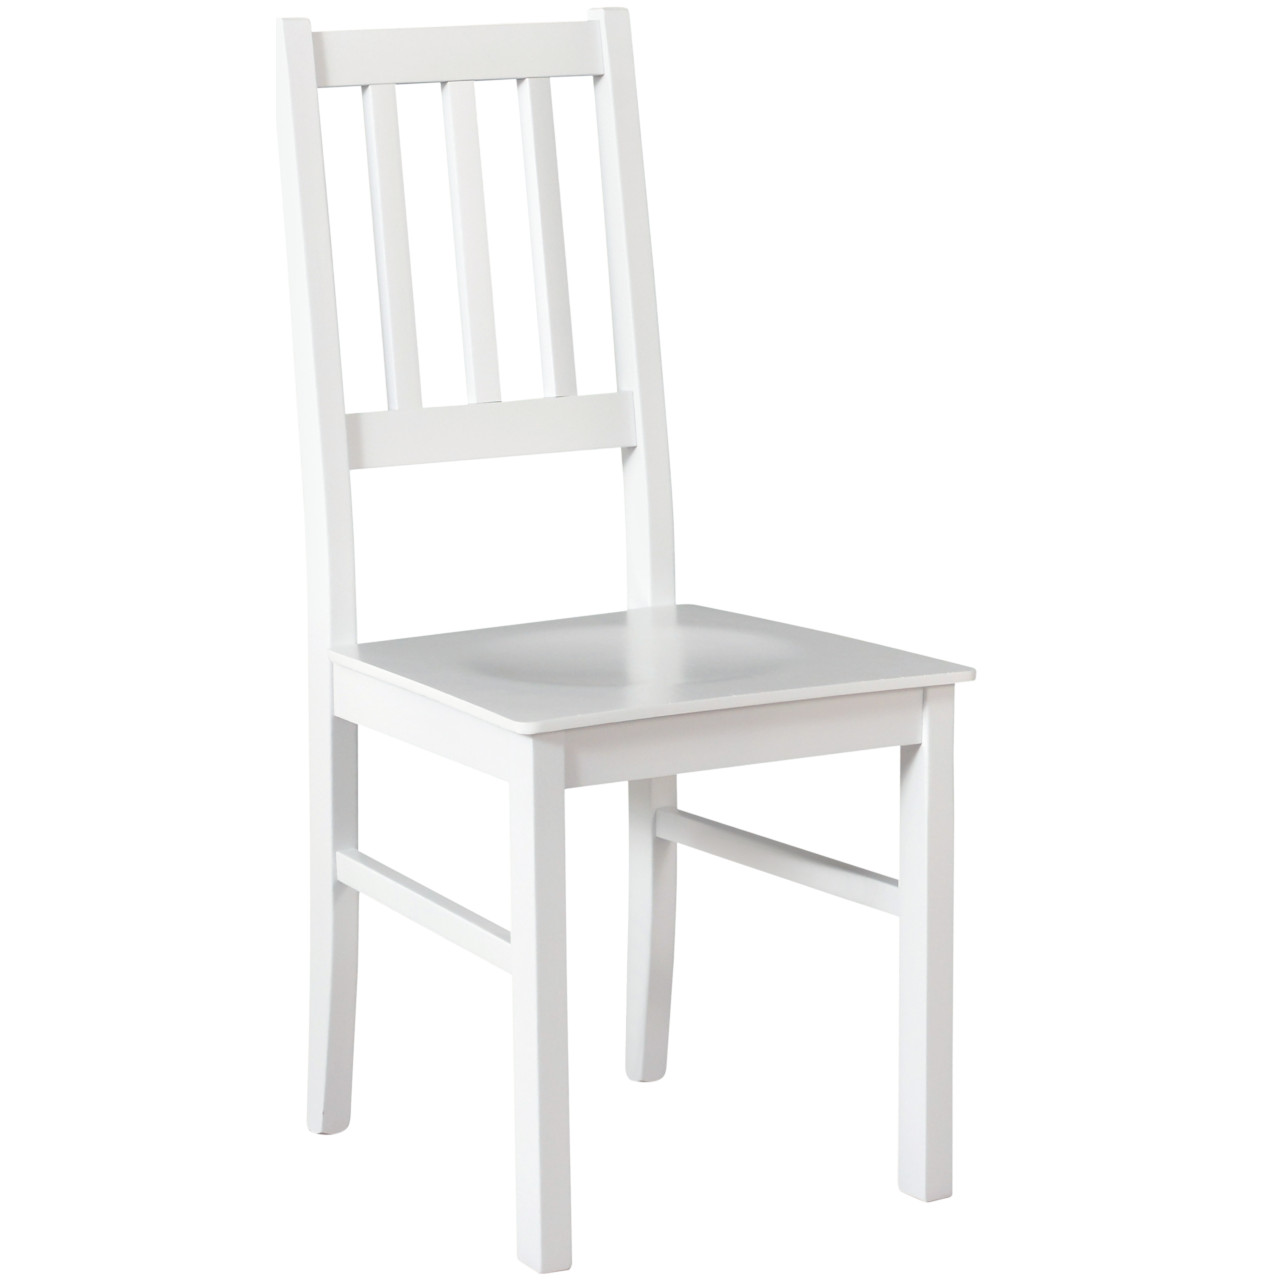 Chair BOS 4D white